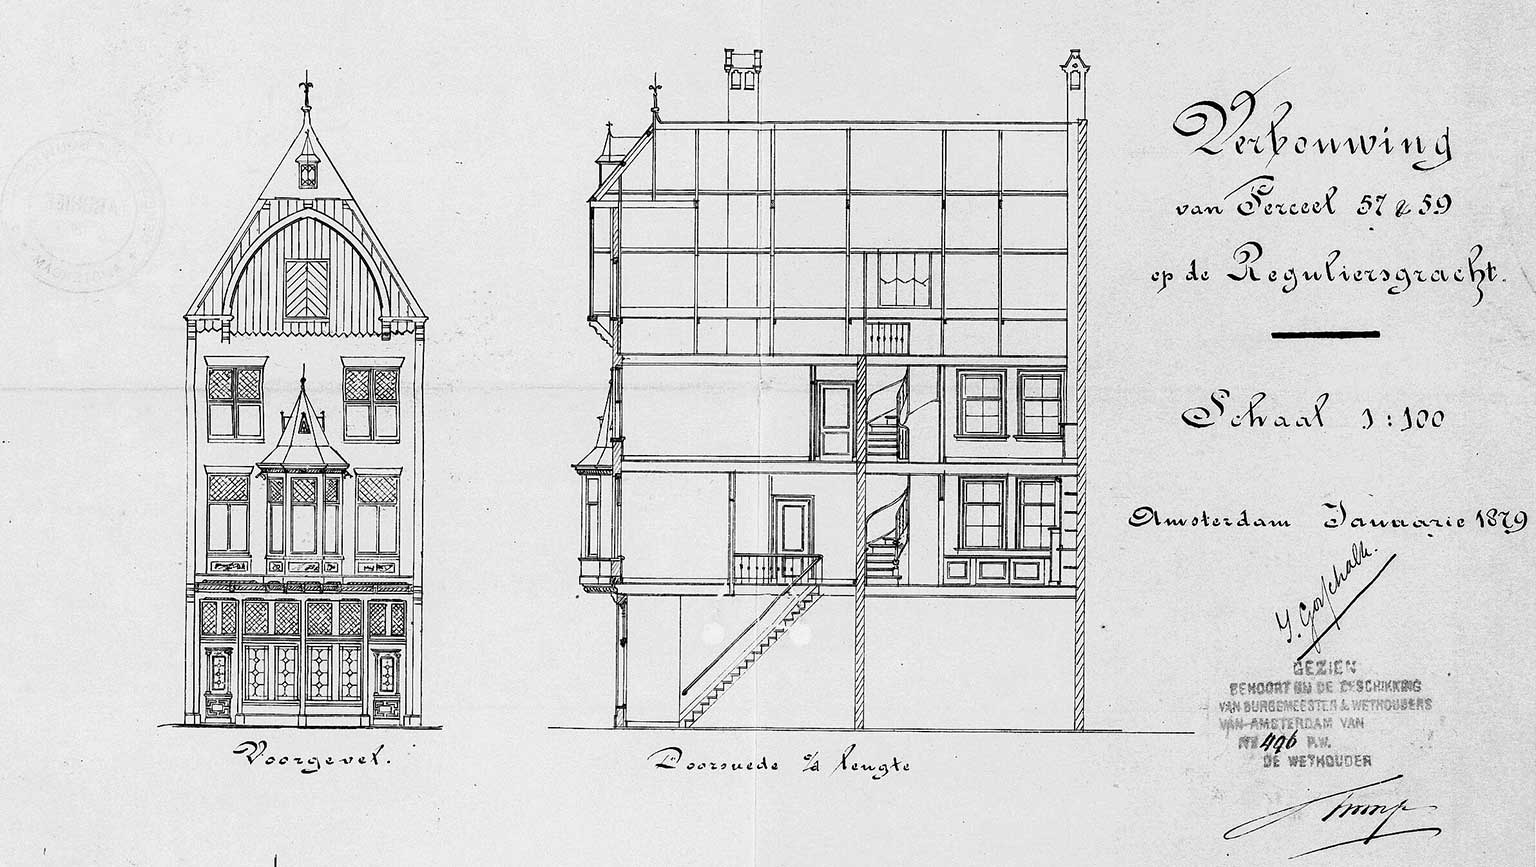 Reguliersgracht 57-59, Amsterdam, tekening uit 1879 van architect Isaac Gosschalk